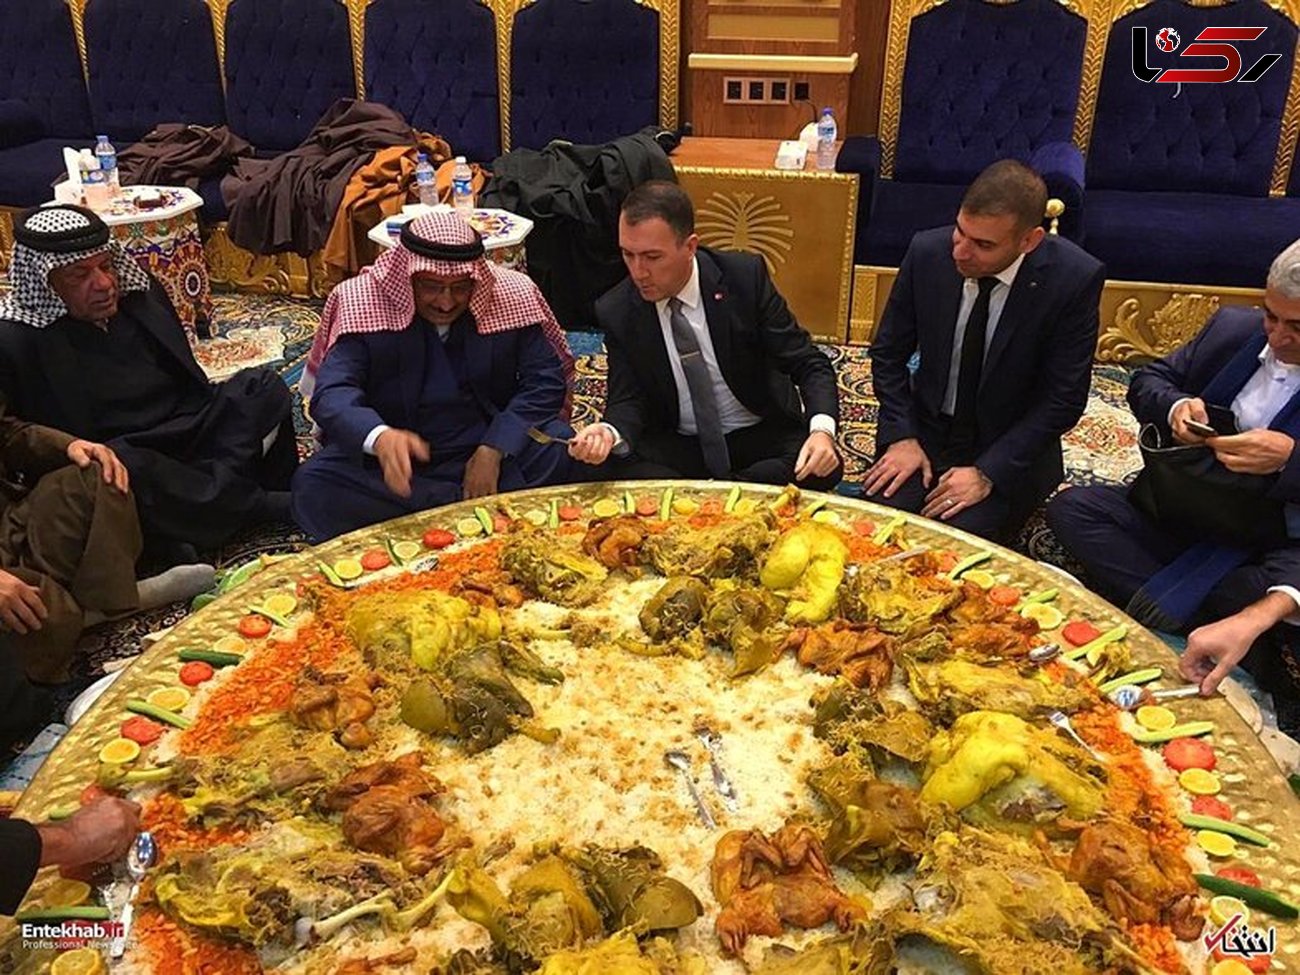 
سفیر ترکیه از پذیرایی عجیب عراق شگفت زده شد +عکس
